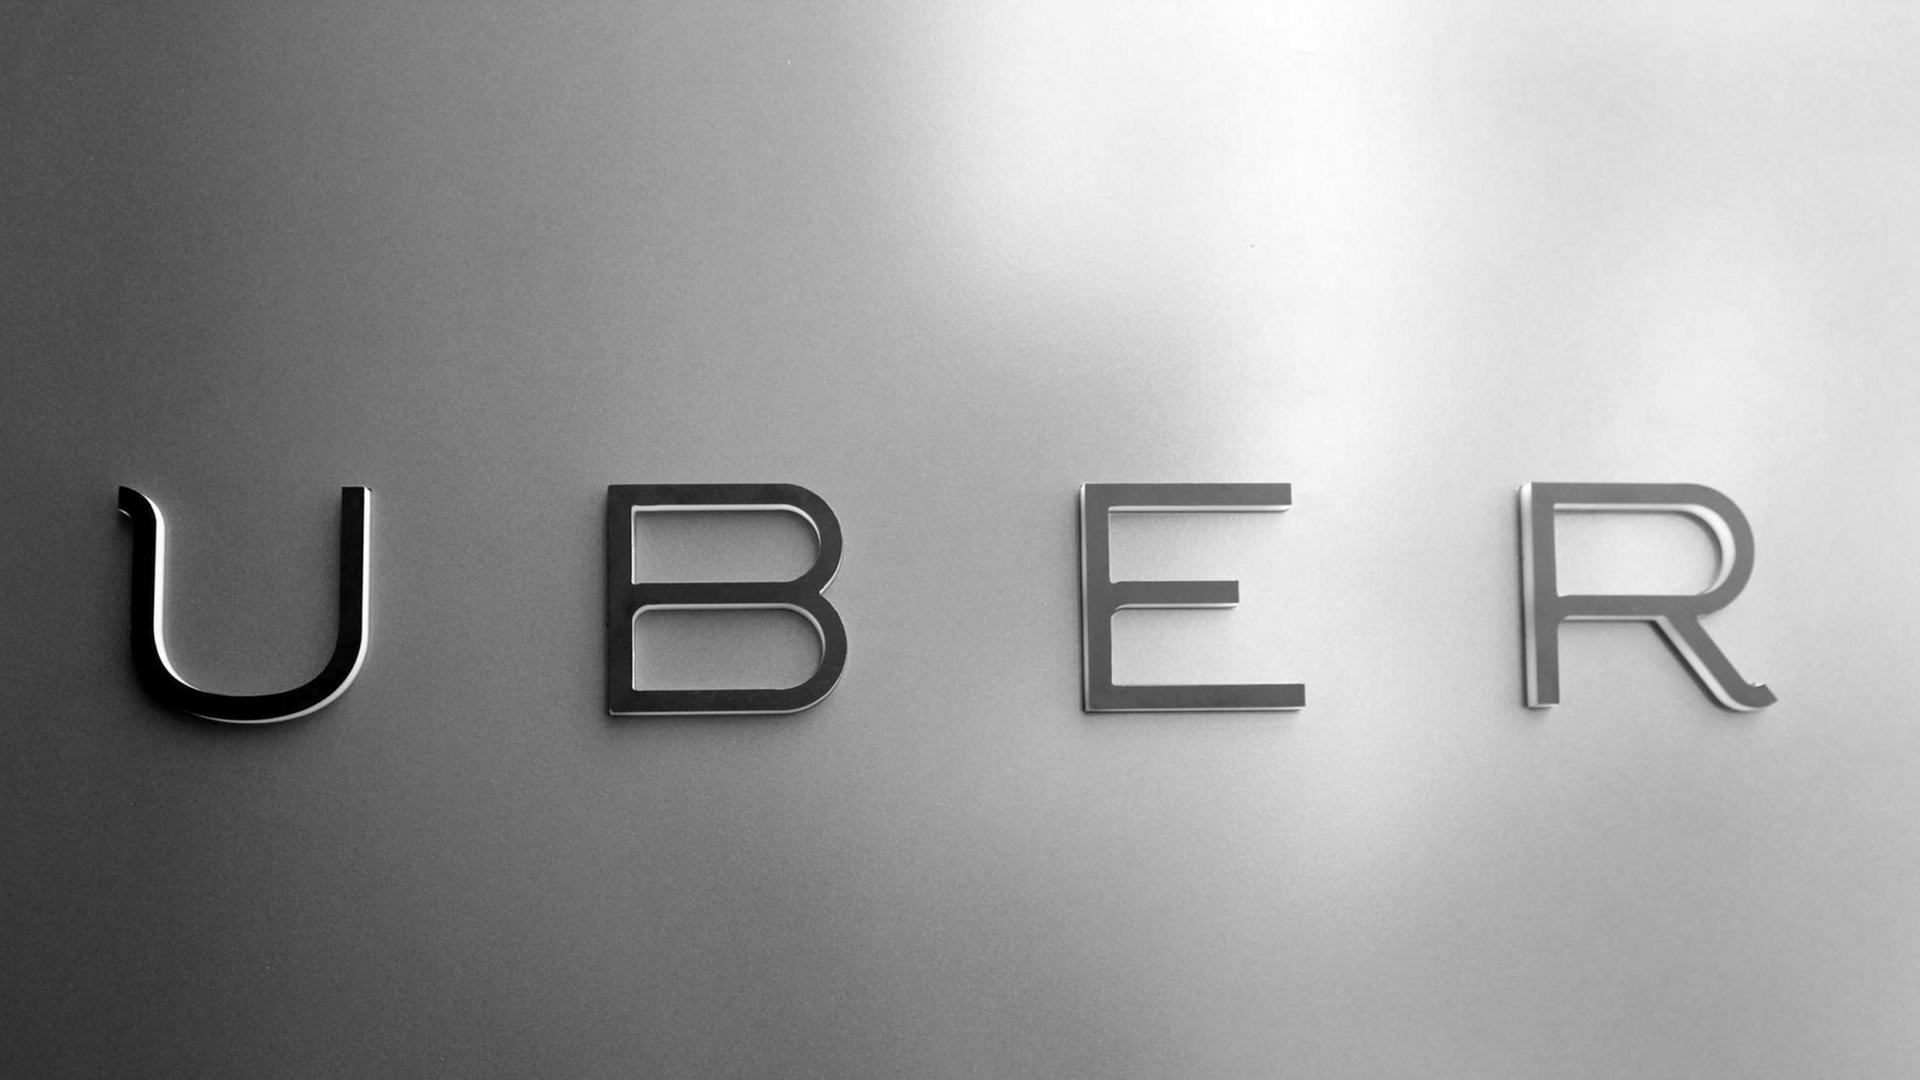 ARCHIV - Das Logo des umstrittenen Fahrdienst-Vermittlers Uber ist am 03.06.2014 in einer Filiale in San Francisco (USA) zu sehen. Der umstrittene Fahrdienst-Vermittler erweitert sein Einzugsgebiet um 24 St